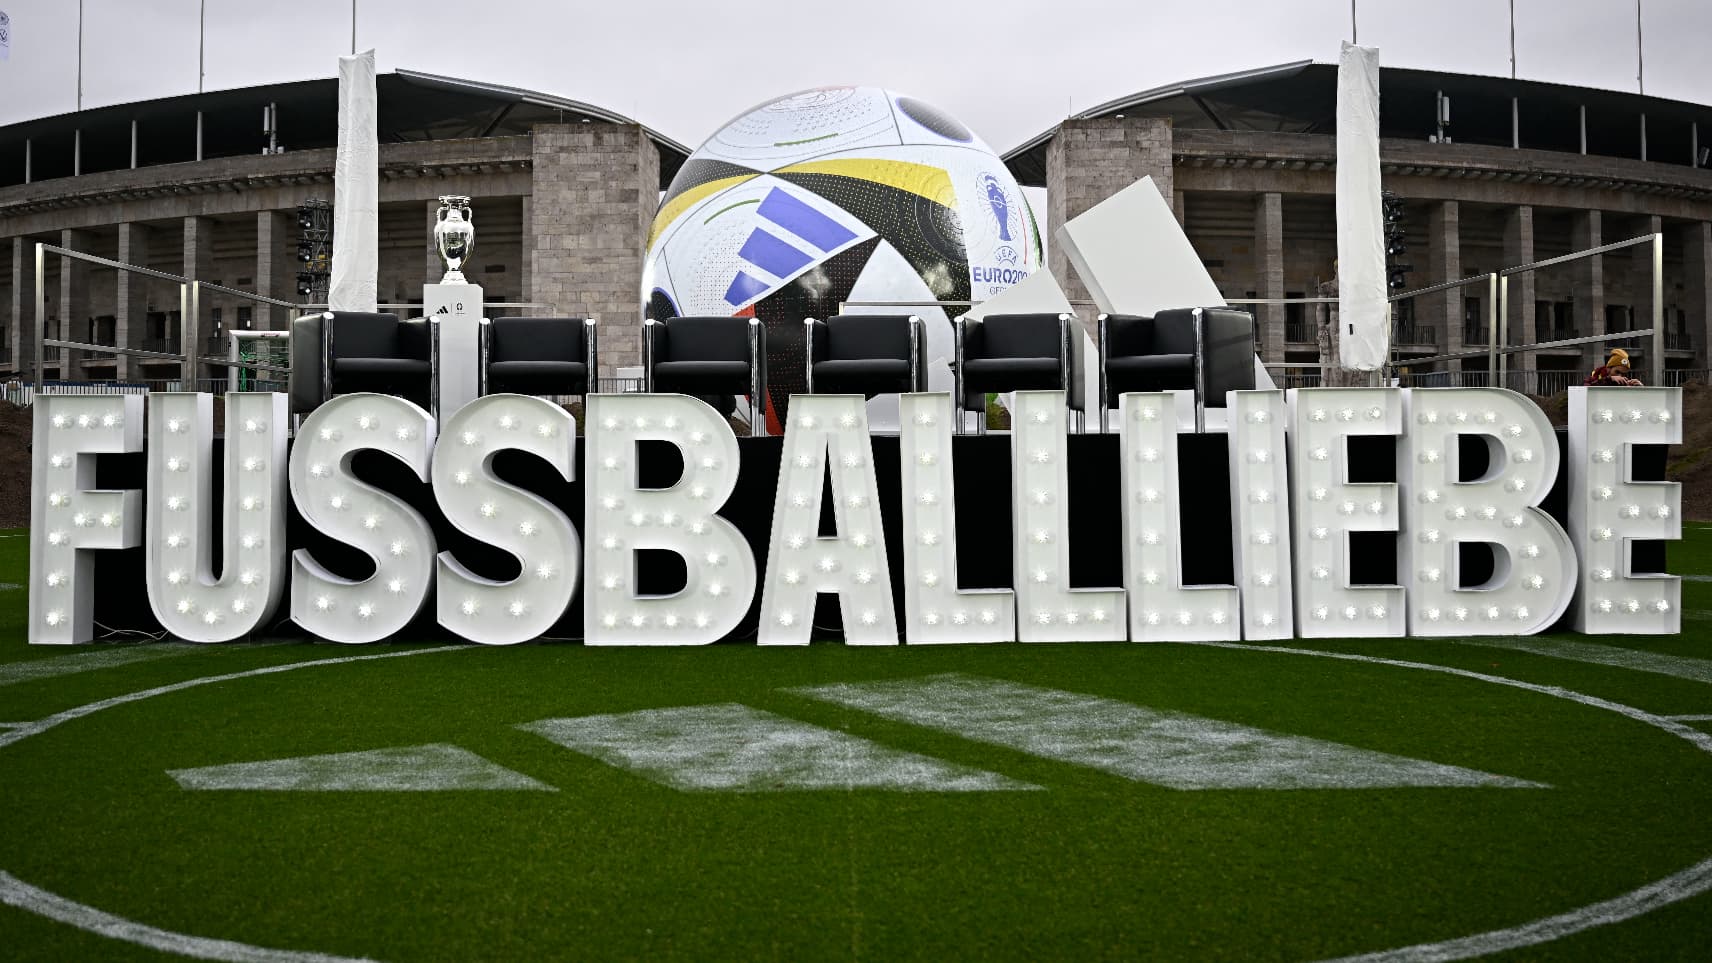 Euro 2024 : L'UEFA dévoile le ballon officiel de la compétition